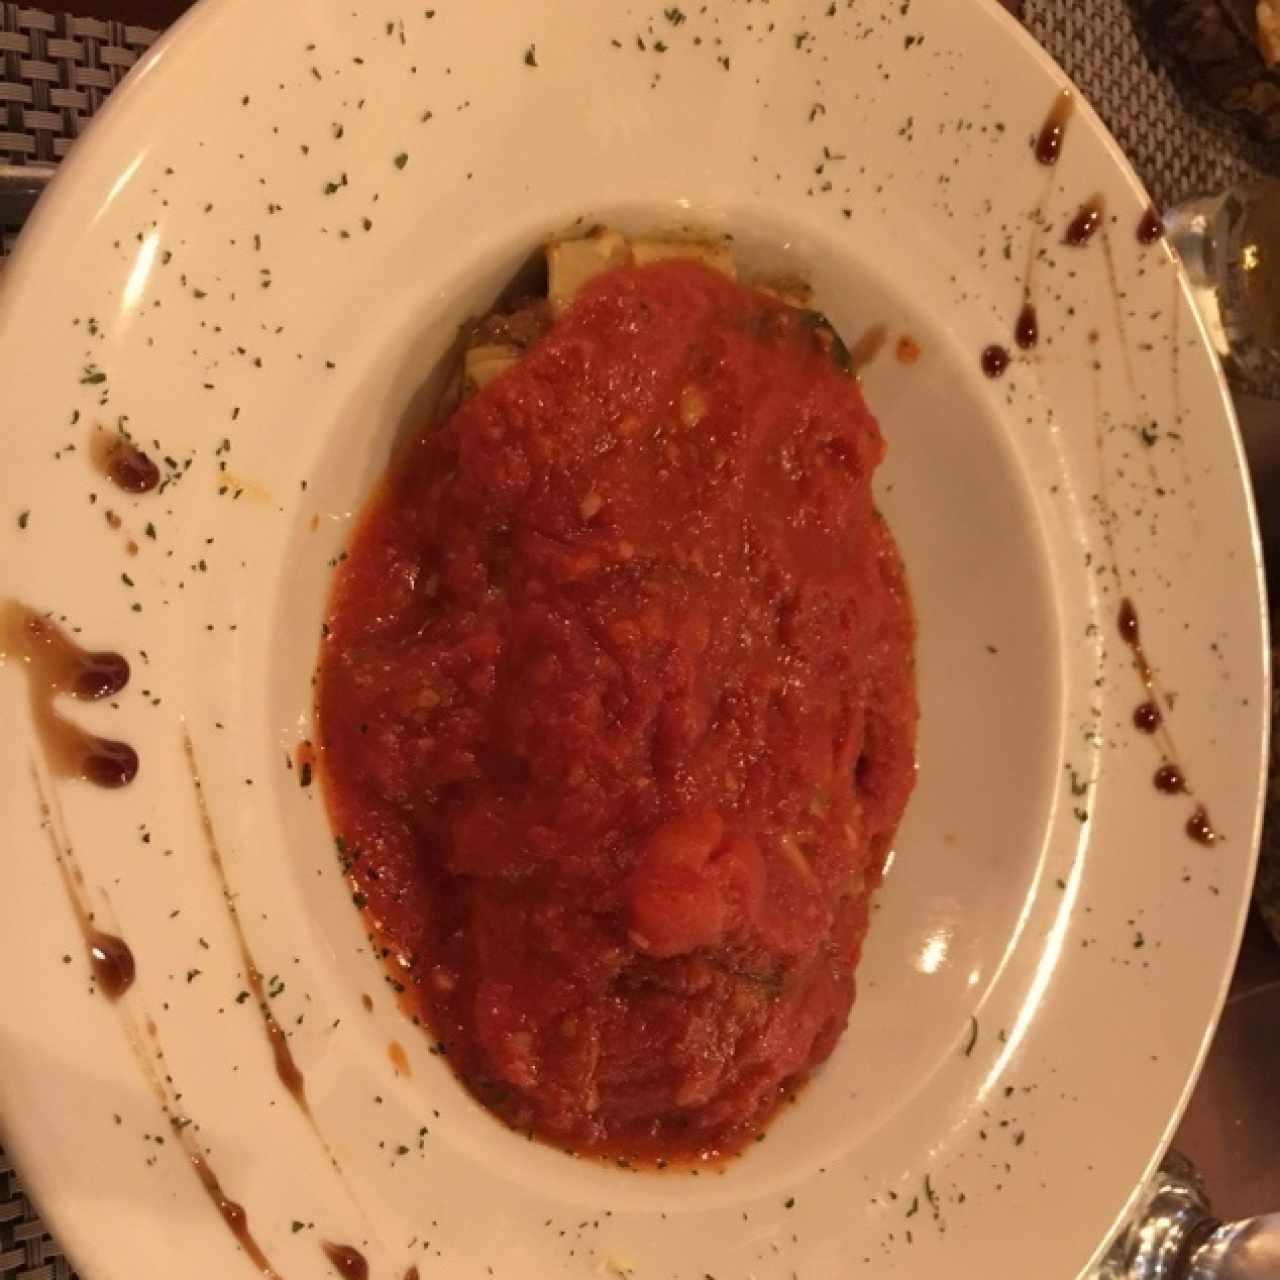 lasagna de carne en salsa roja